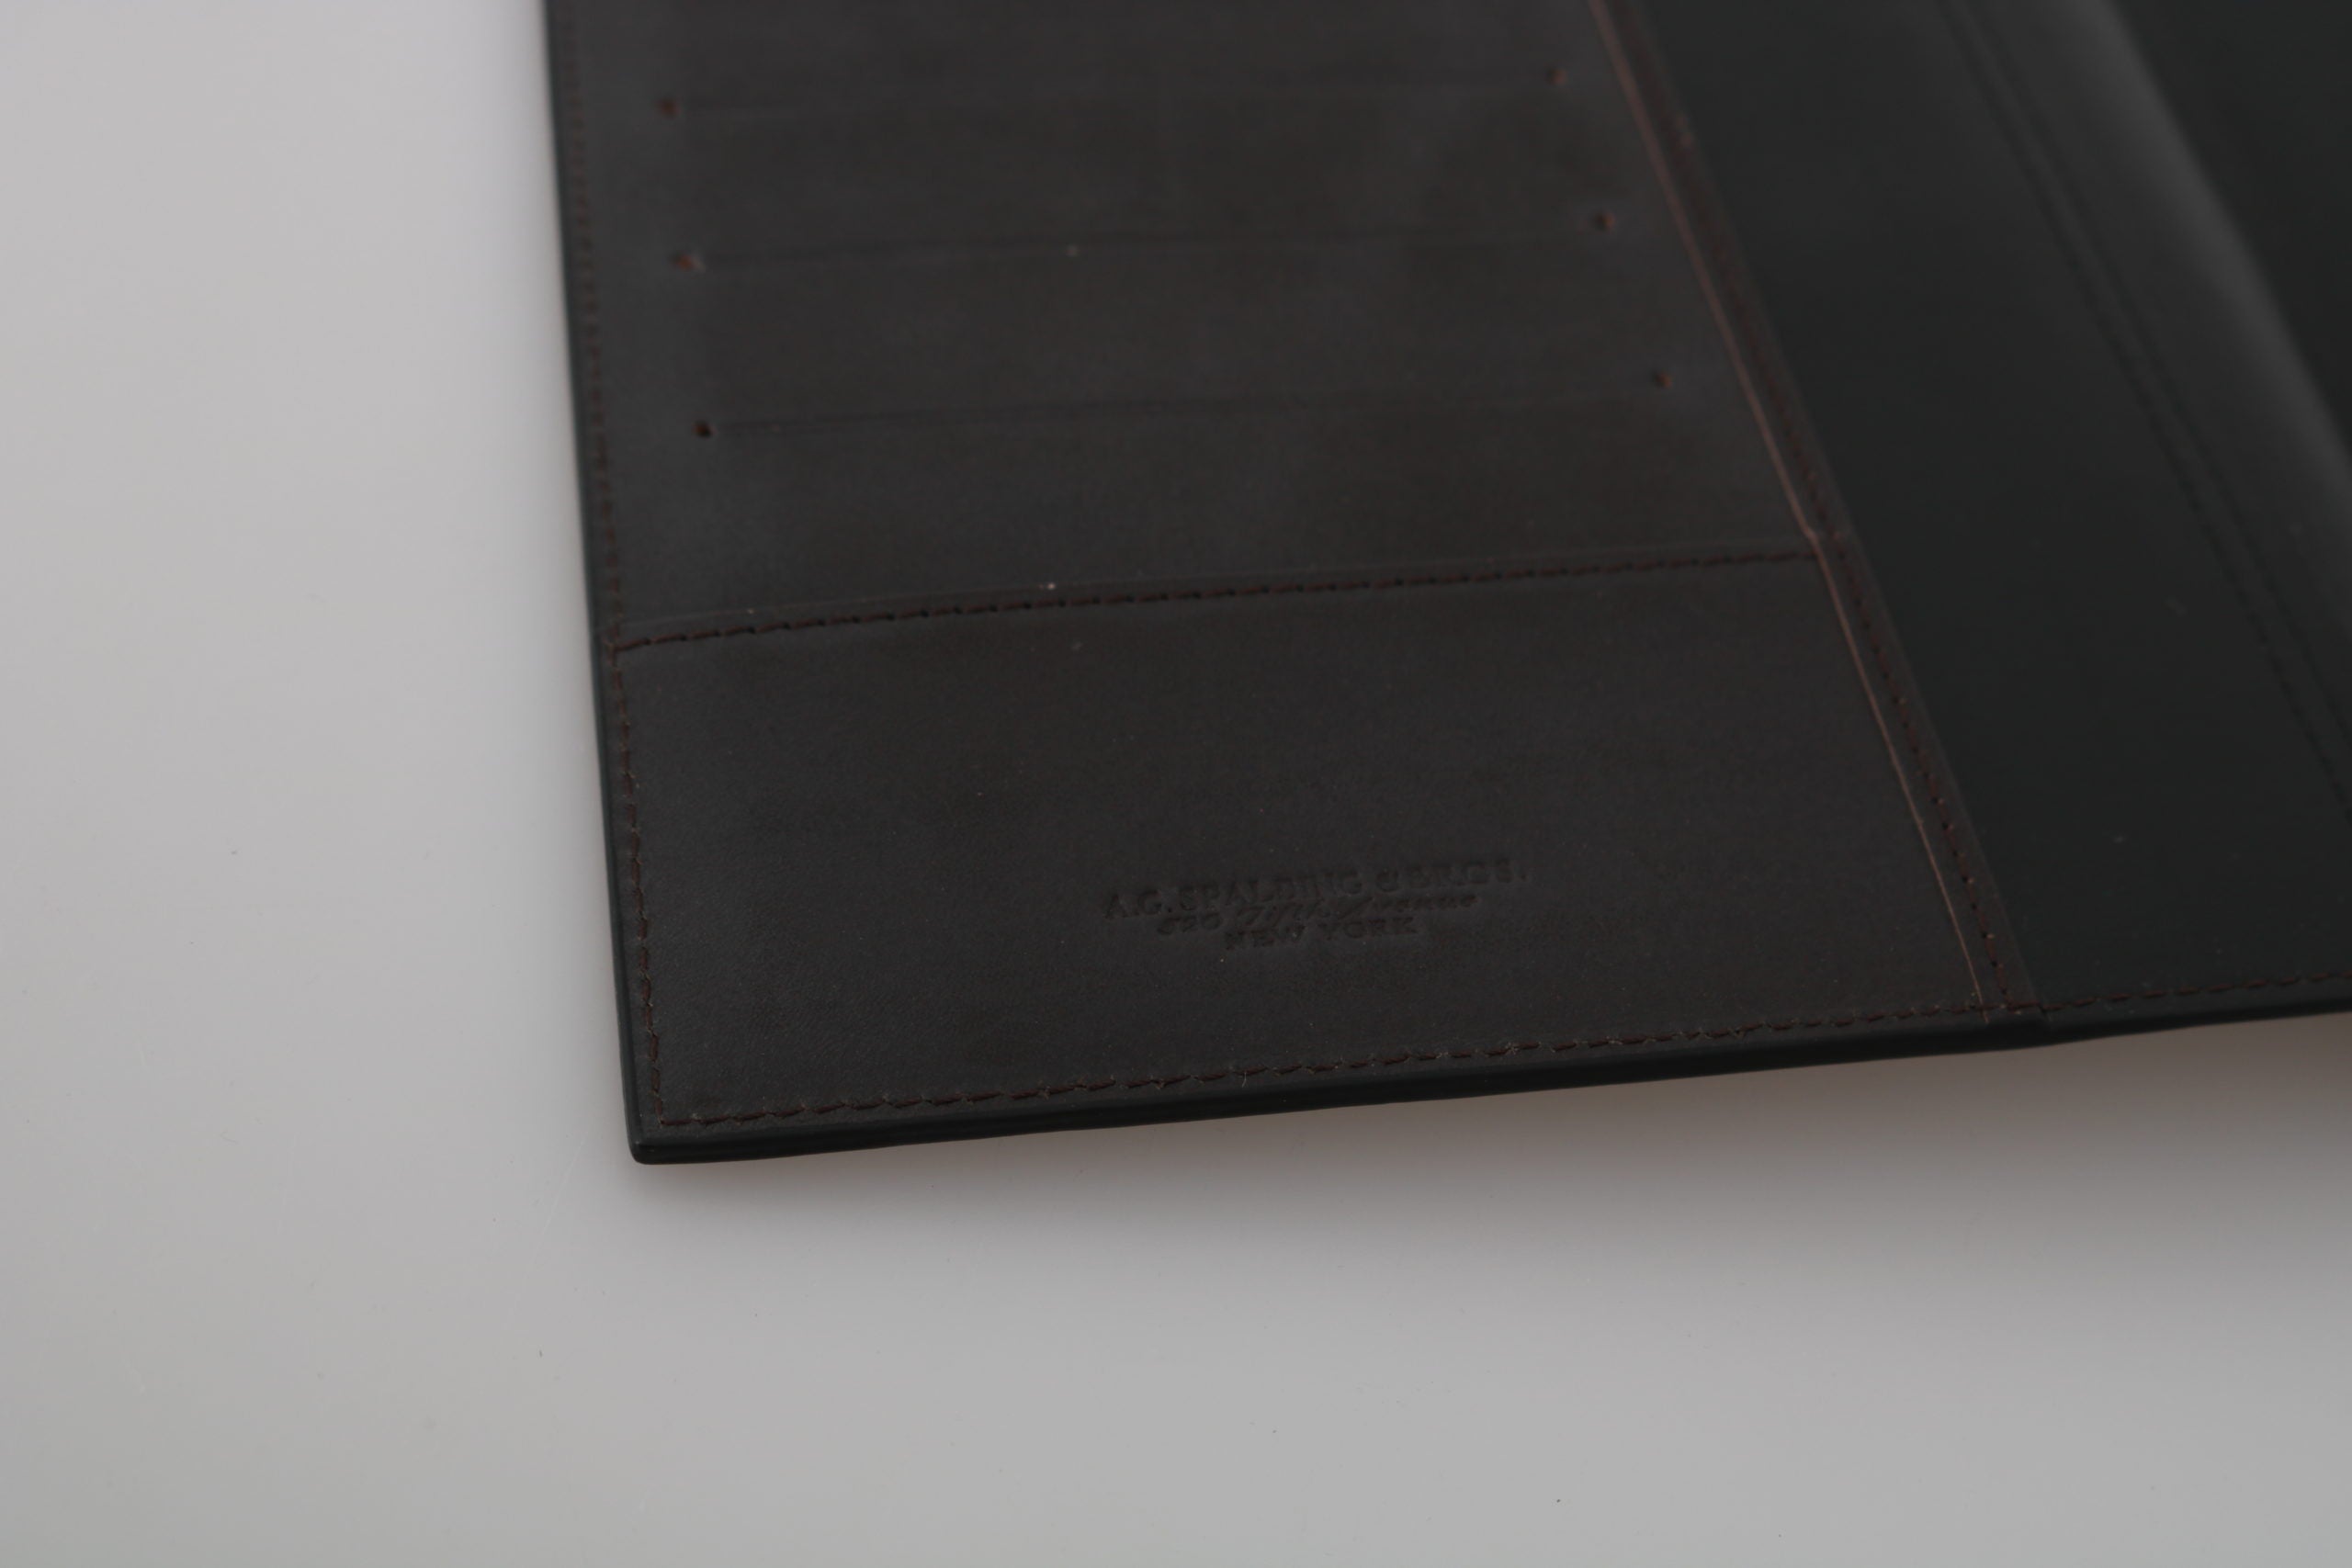 AG Spalding &amp; Bros Черен кожен двоен портфейл с лого на държача за пътуване